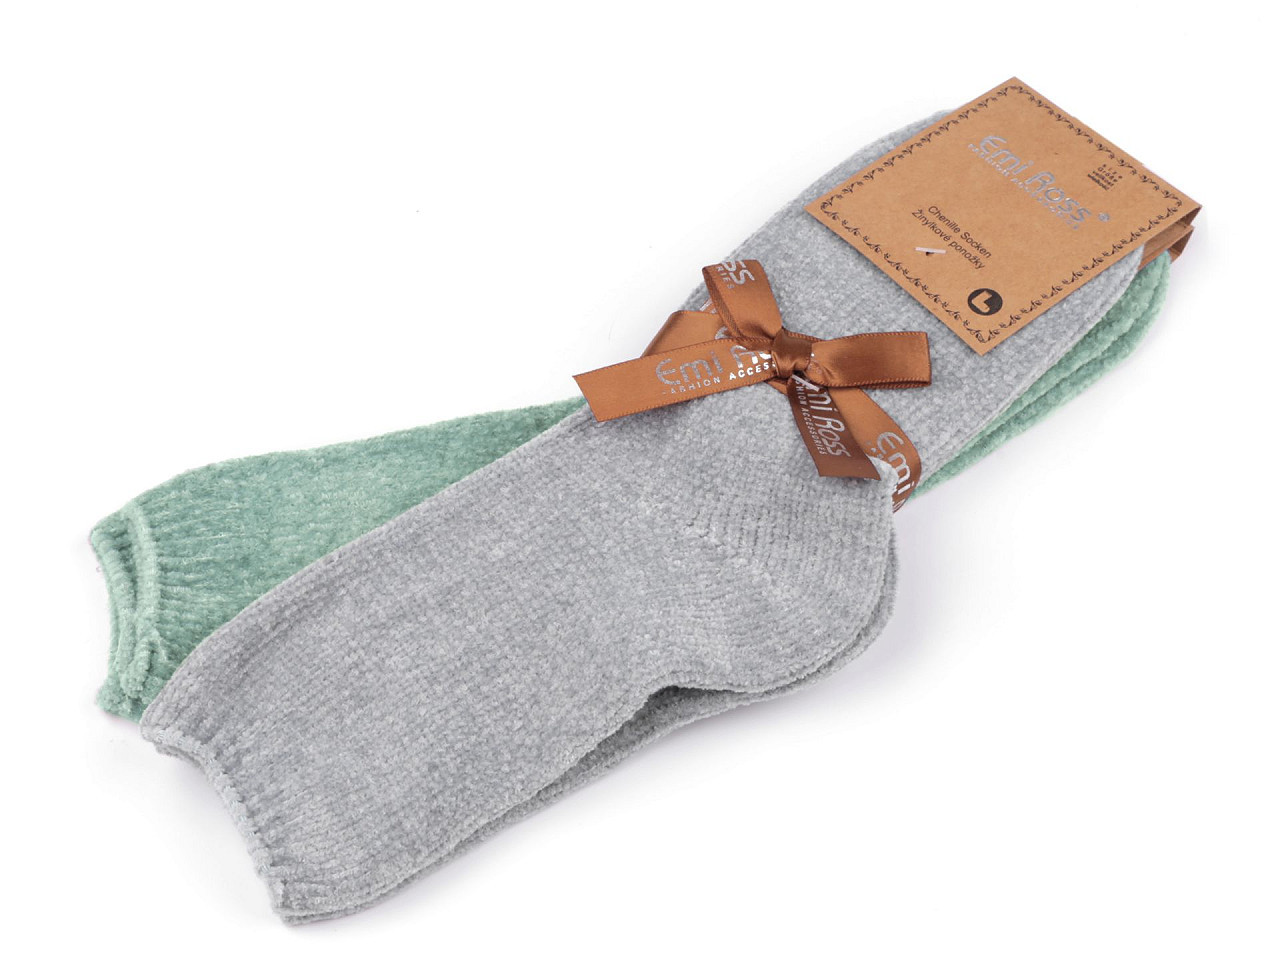 Dámské žinylkové ponožky Emi Ross, barva 17 (vel. 35-38) mix